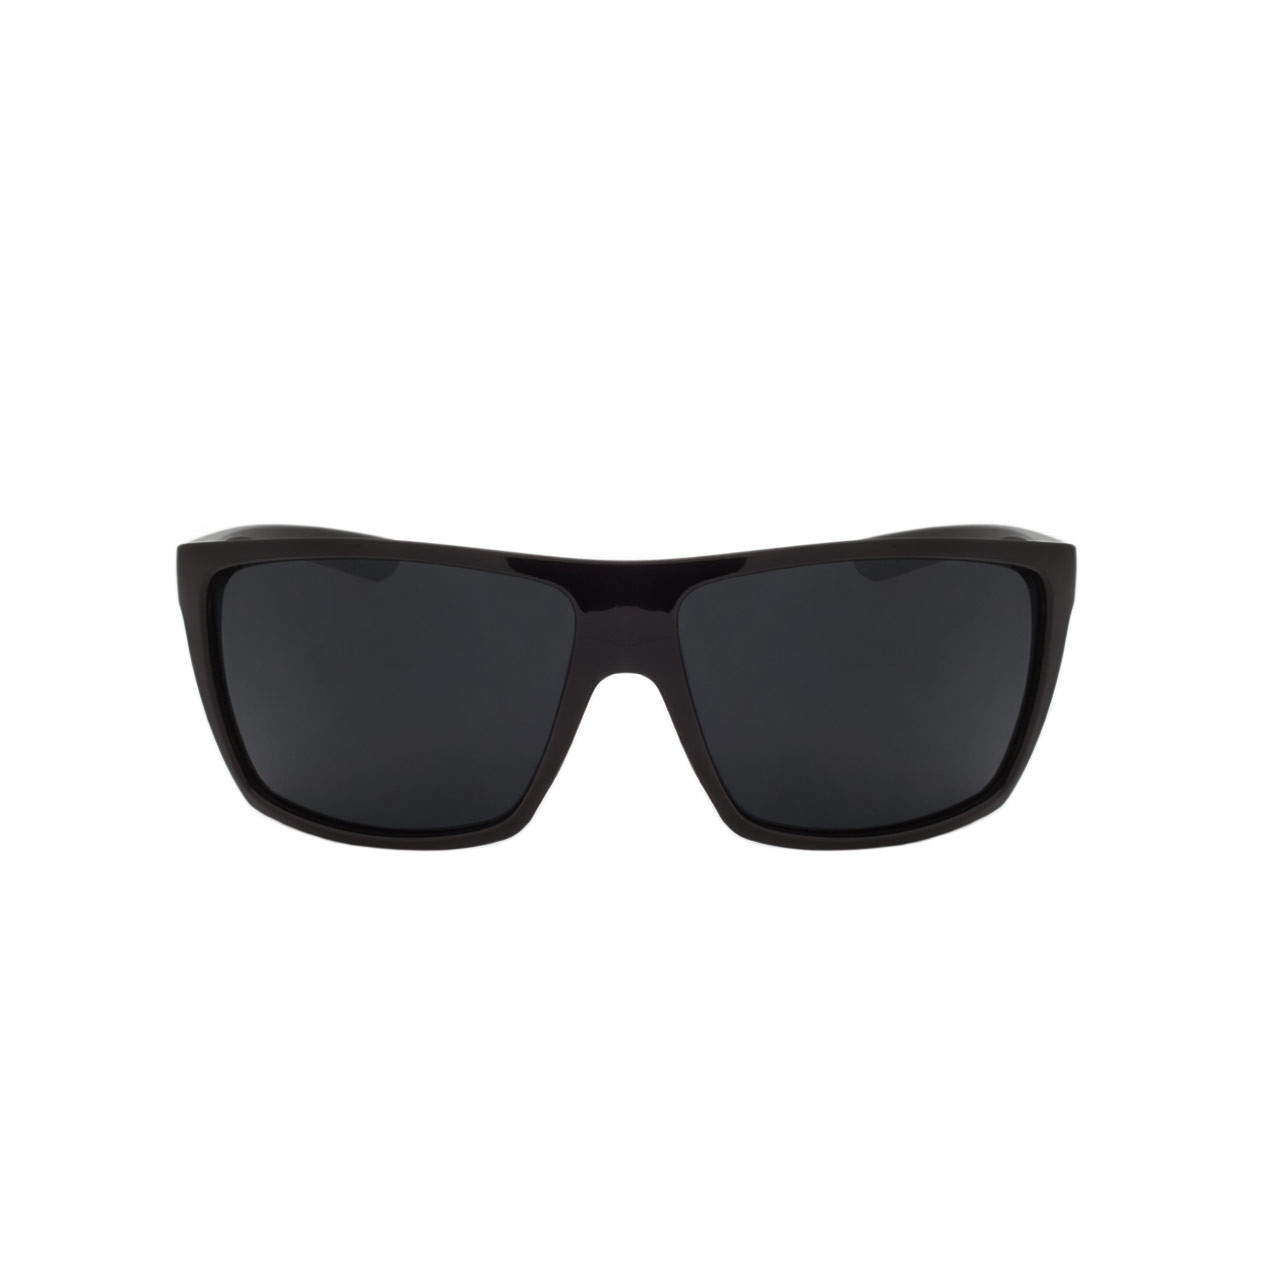 Buy Darkstar Polarized Square Sunglasses - Woggles